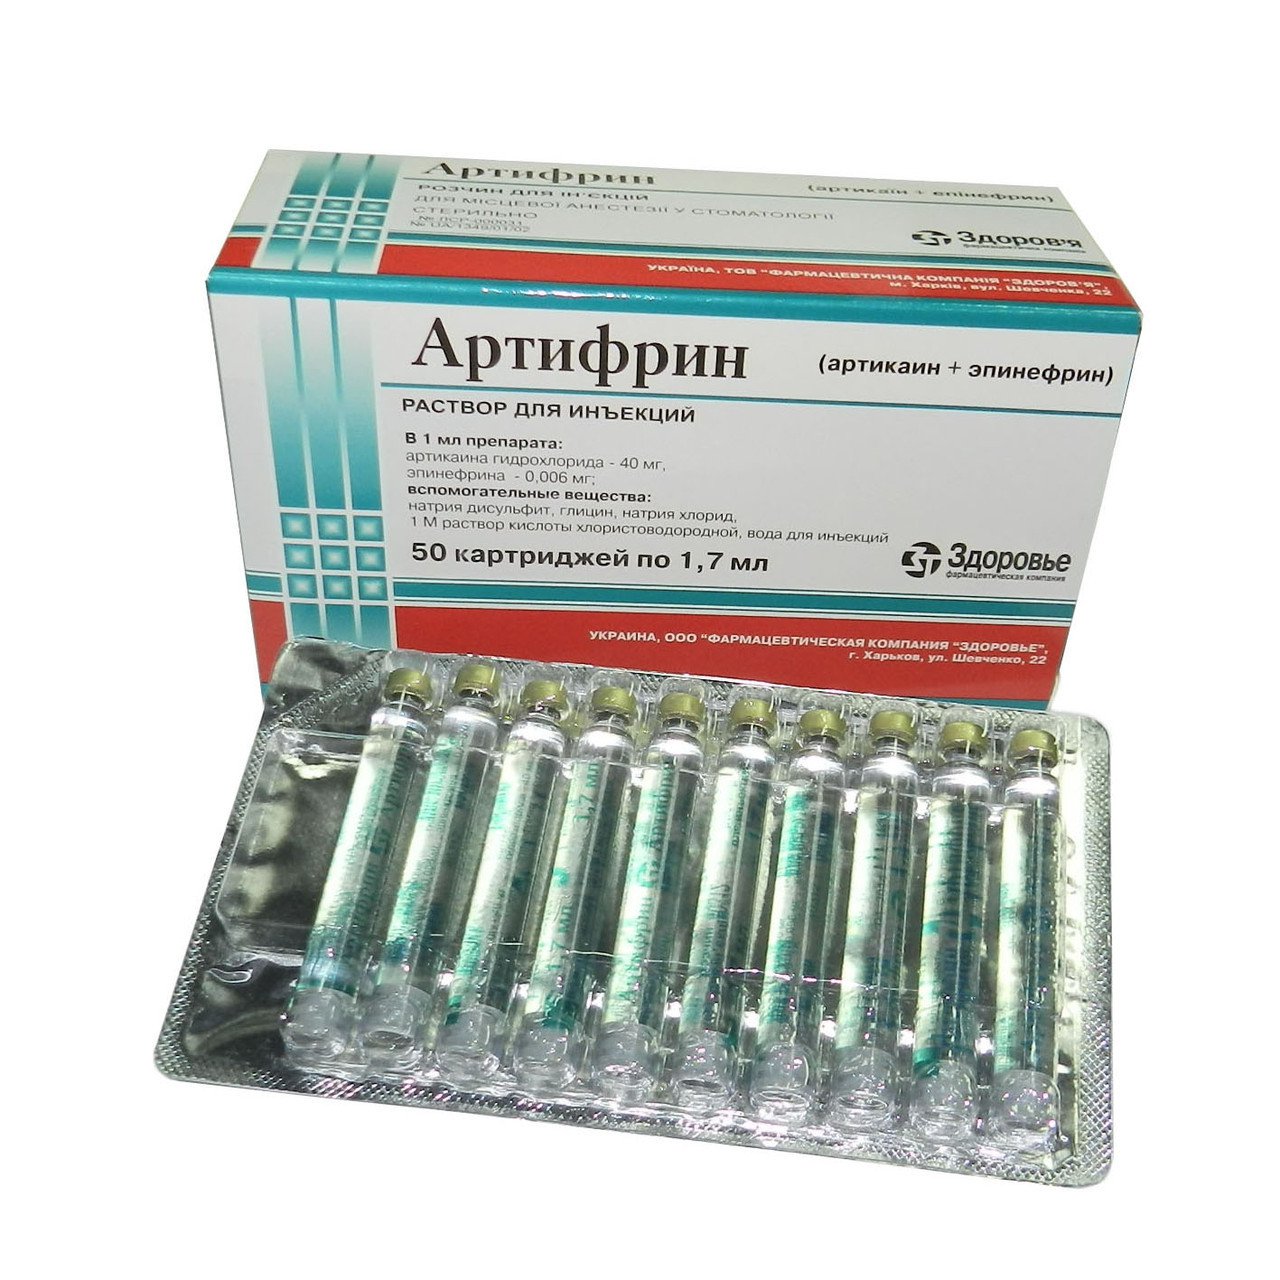 Артикаин 1 100000. Артикаин с адреналином в ампулах. Артикаин 0.01 мг. Местный анестетик Артикаин 1.7. Карпула Артифрин.